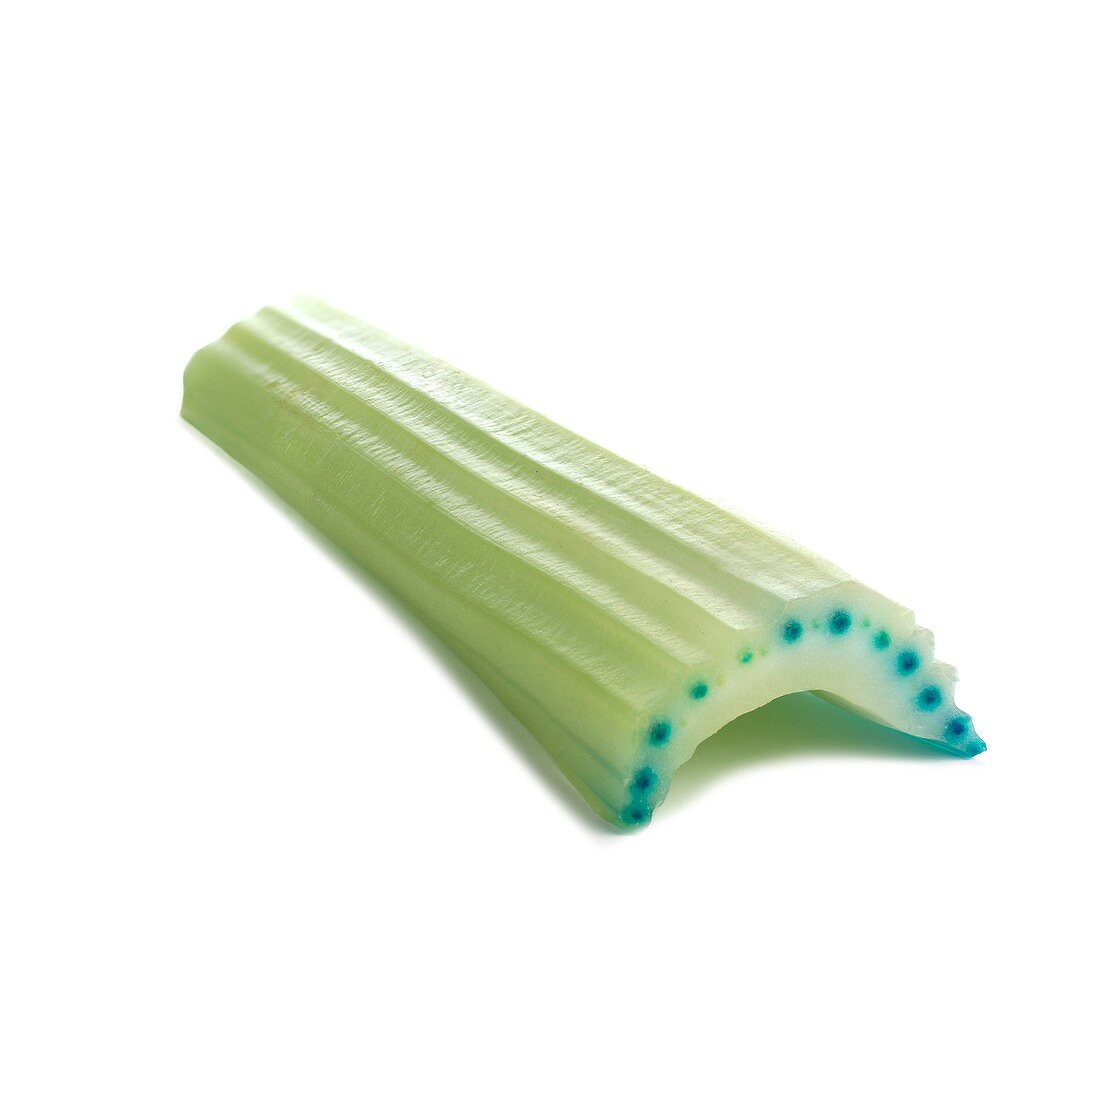 Transpiration in celery stalks